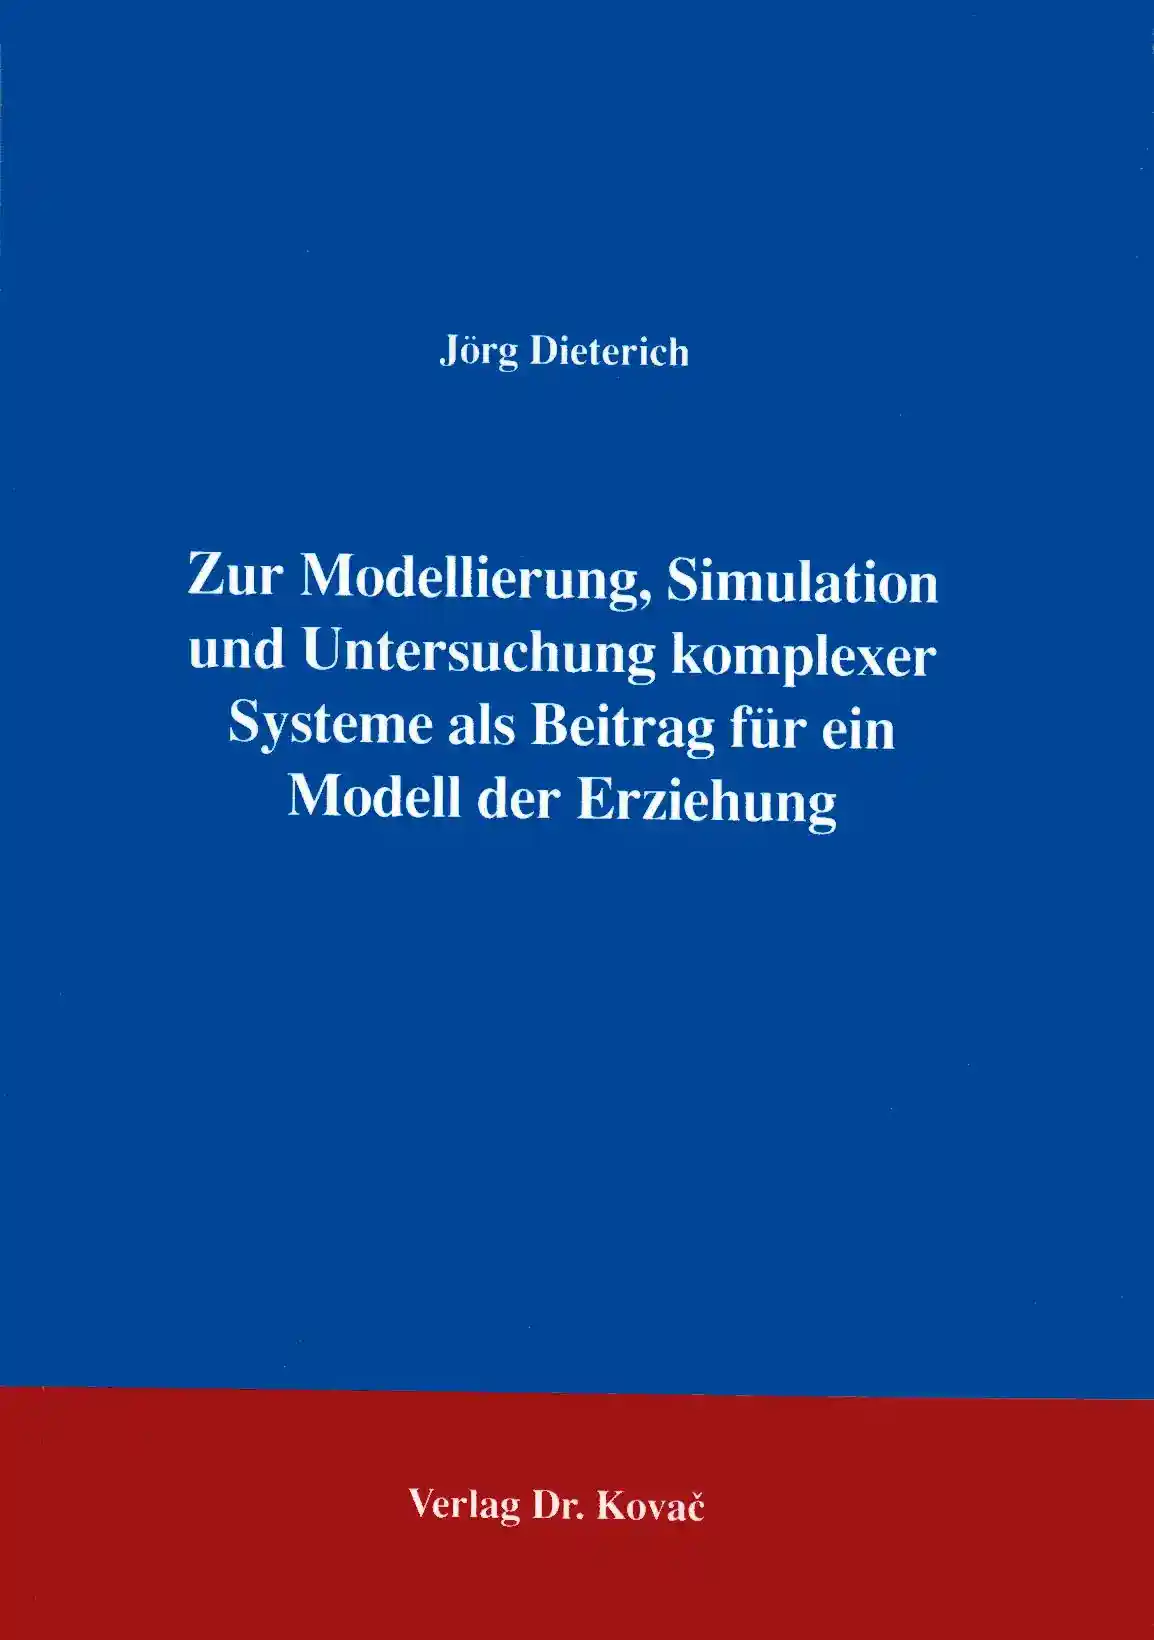 Zur Modellierung, Simulation und Untersuchung komplexer Systeme als Beitrag für ein Modell der Erziehung (Forschungsarbeit)